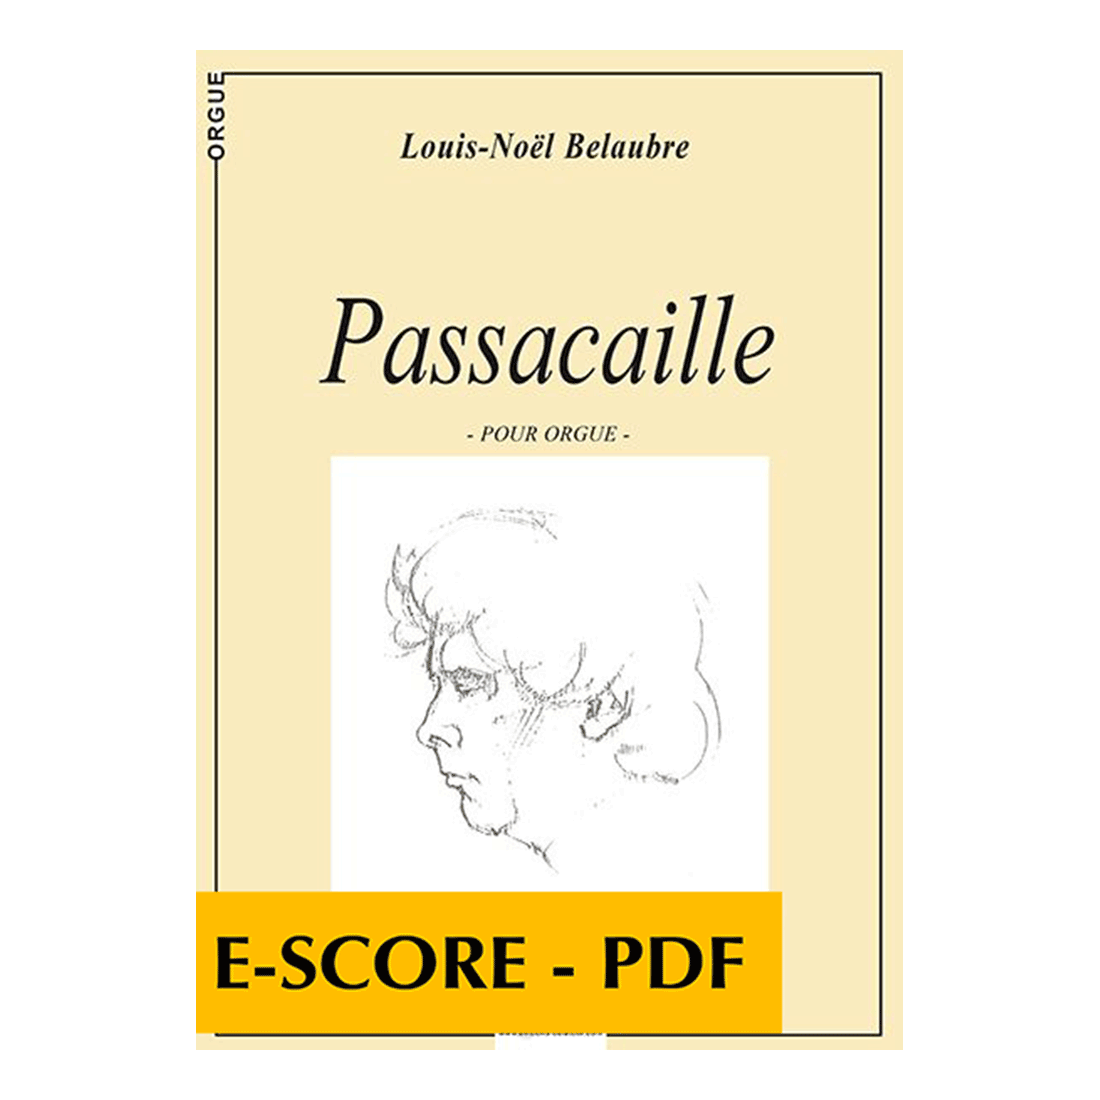 Passacaille pour orgue - E-score PDF